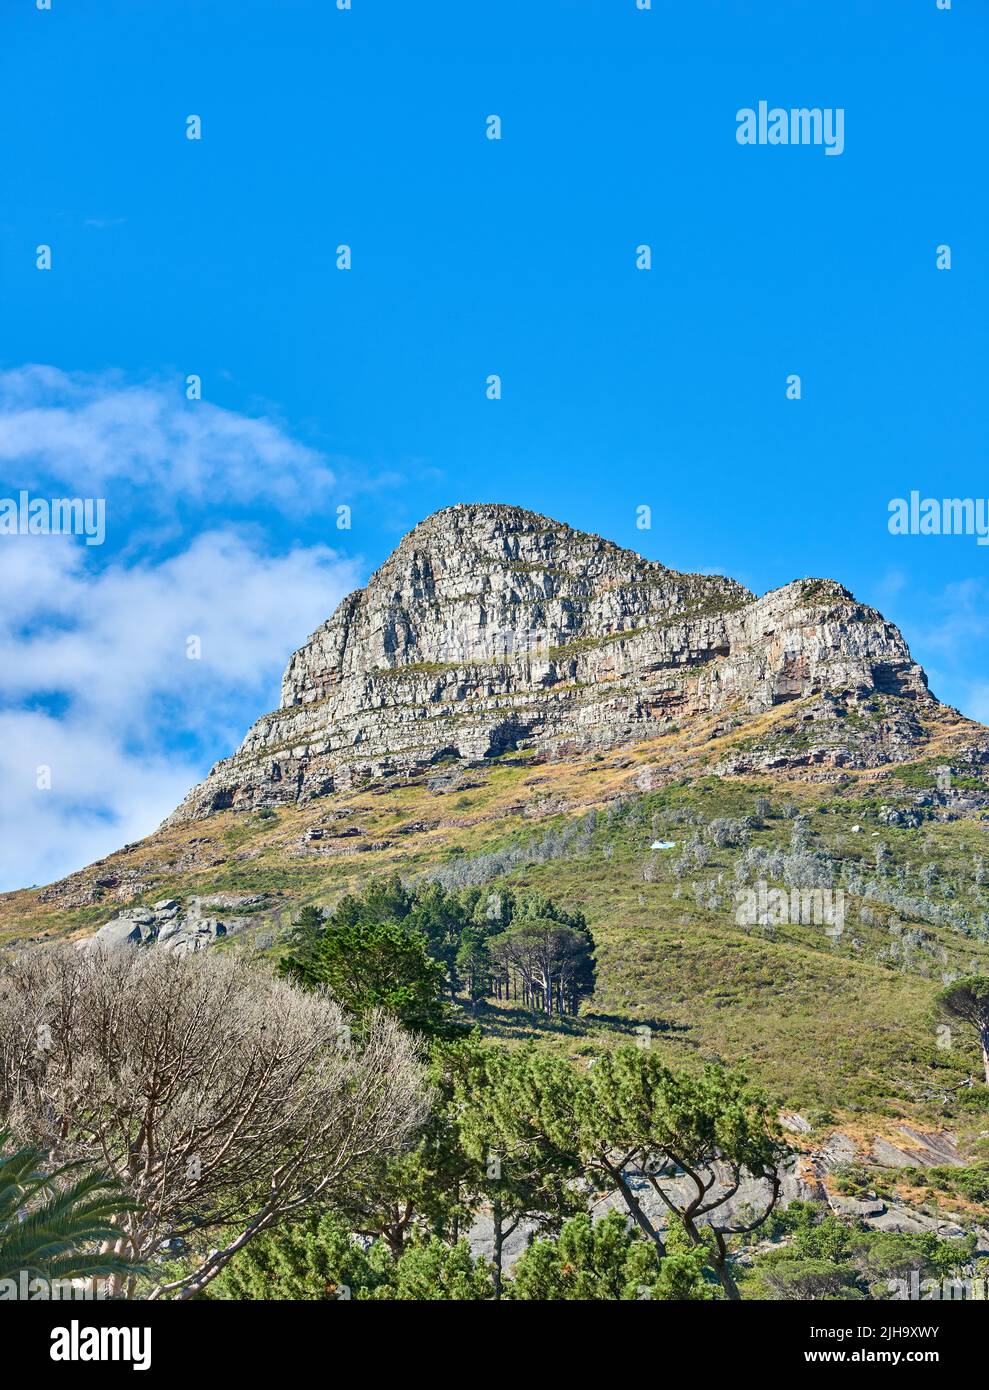 Paysage pittoresque de ciel bleu sur le sommet de Table Mountain au Cap par une journée ensoleillée depuis le bas. Belle vue sur les plantes et les arbres autour d'un Banque D'Images